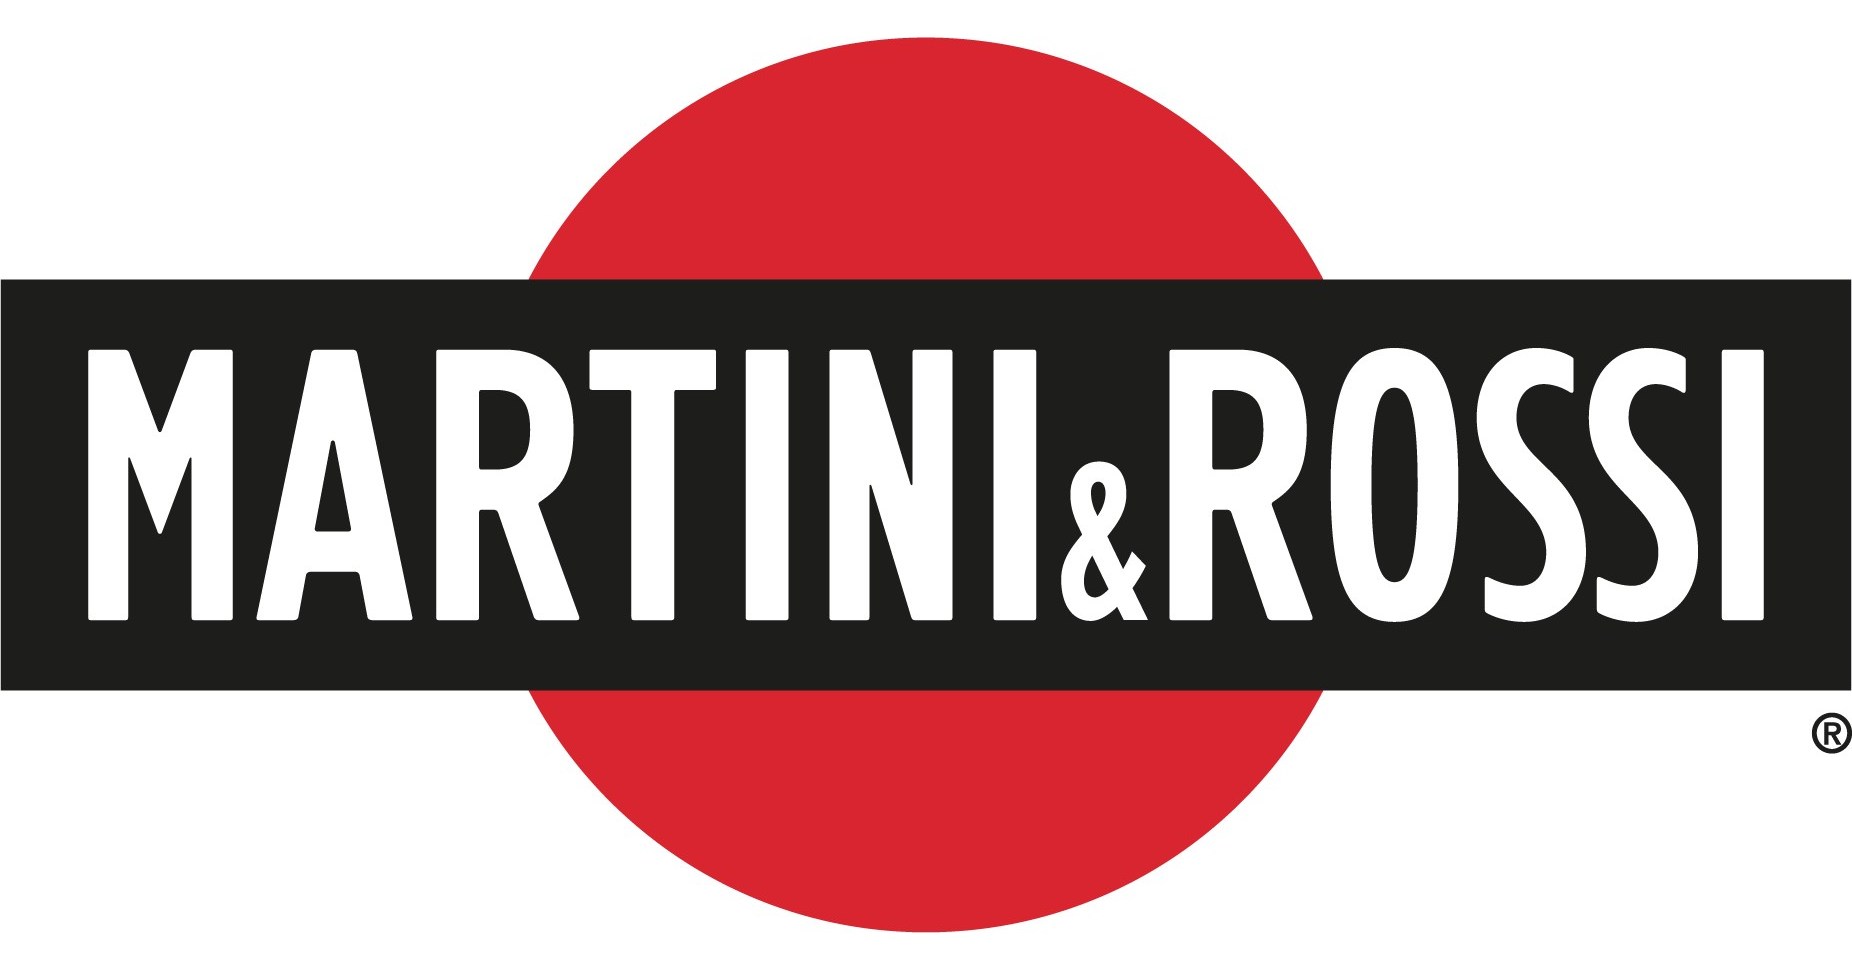 Martini & Rossi logo